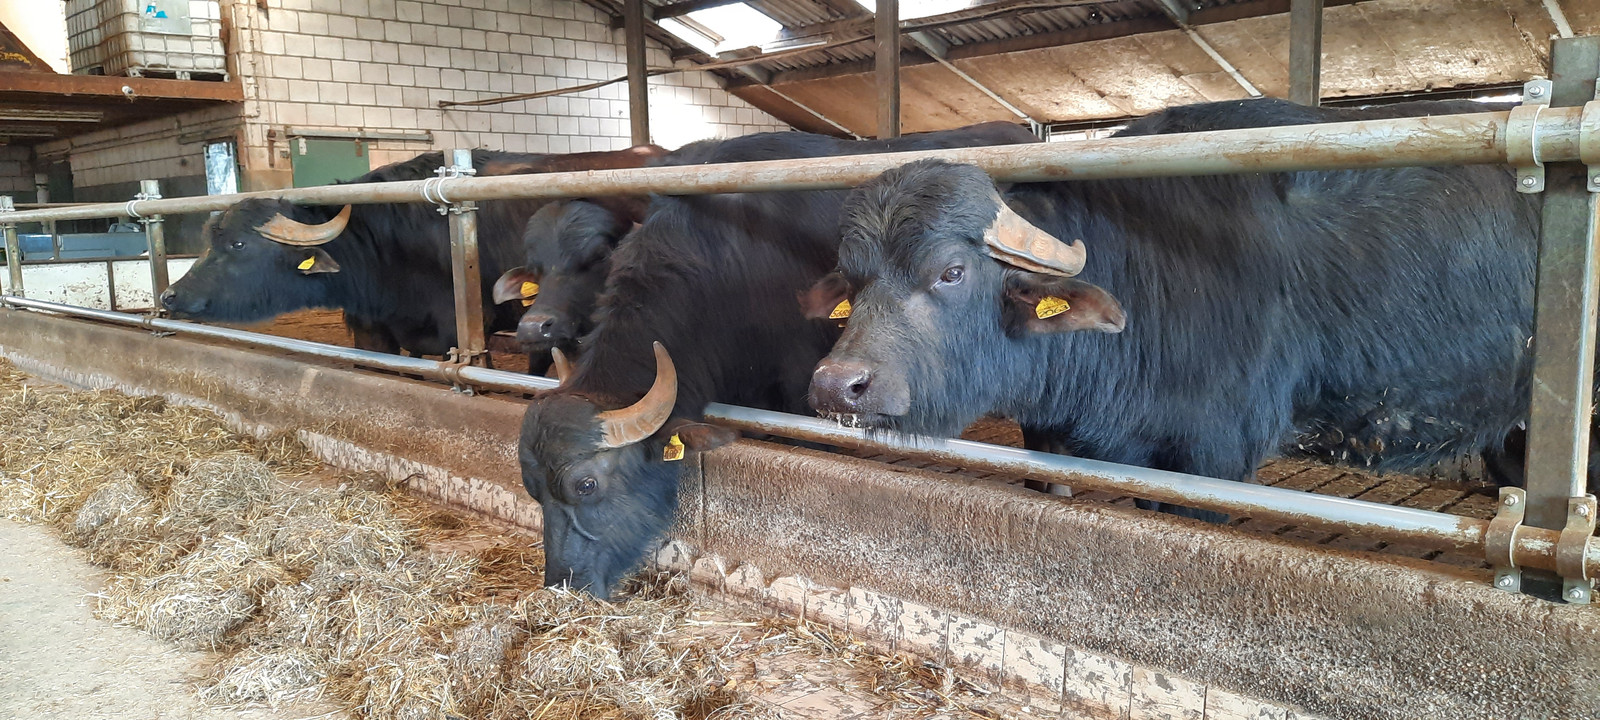 Waterbuffels in de stal van Van den Hurk. Het hek is aangepast en heeft nauwelijks verticale stangen, omdat de dieren daar met hun typische horens achter kunnen blijven hangen.